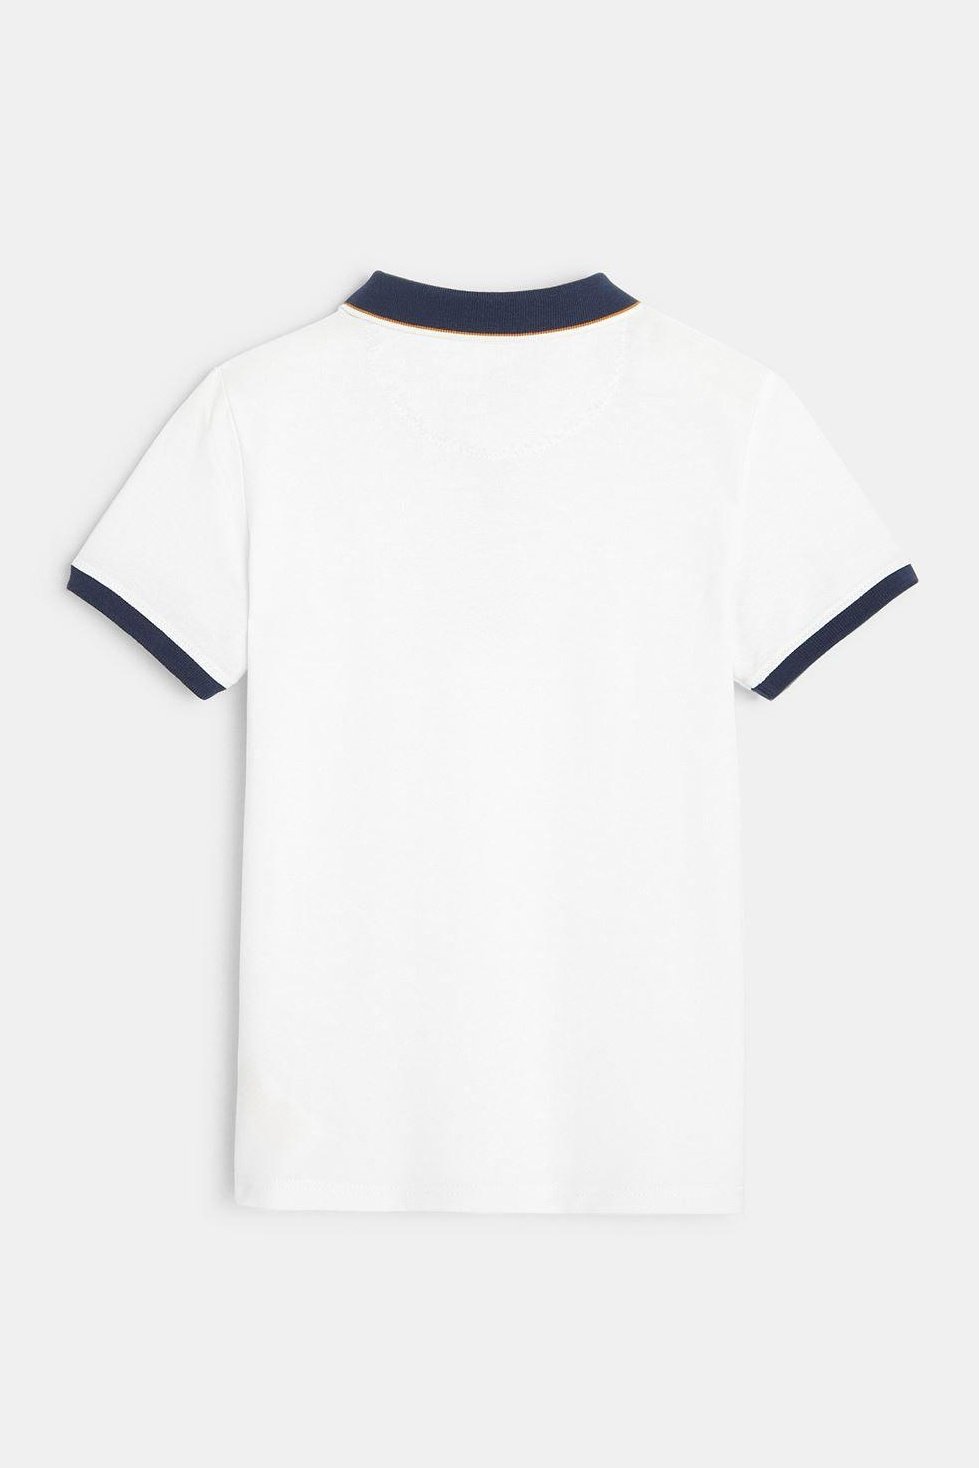 חולצת פולו פיקה לבנה ילדים - MASHBIR//365